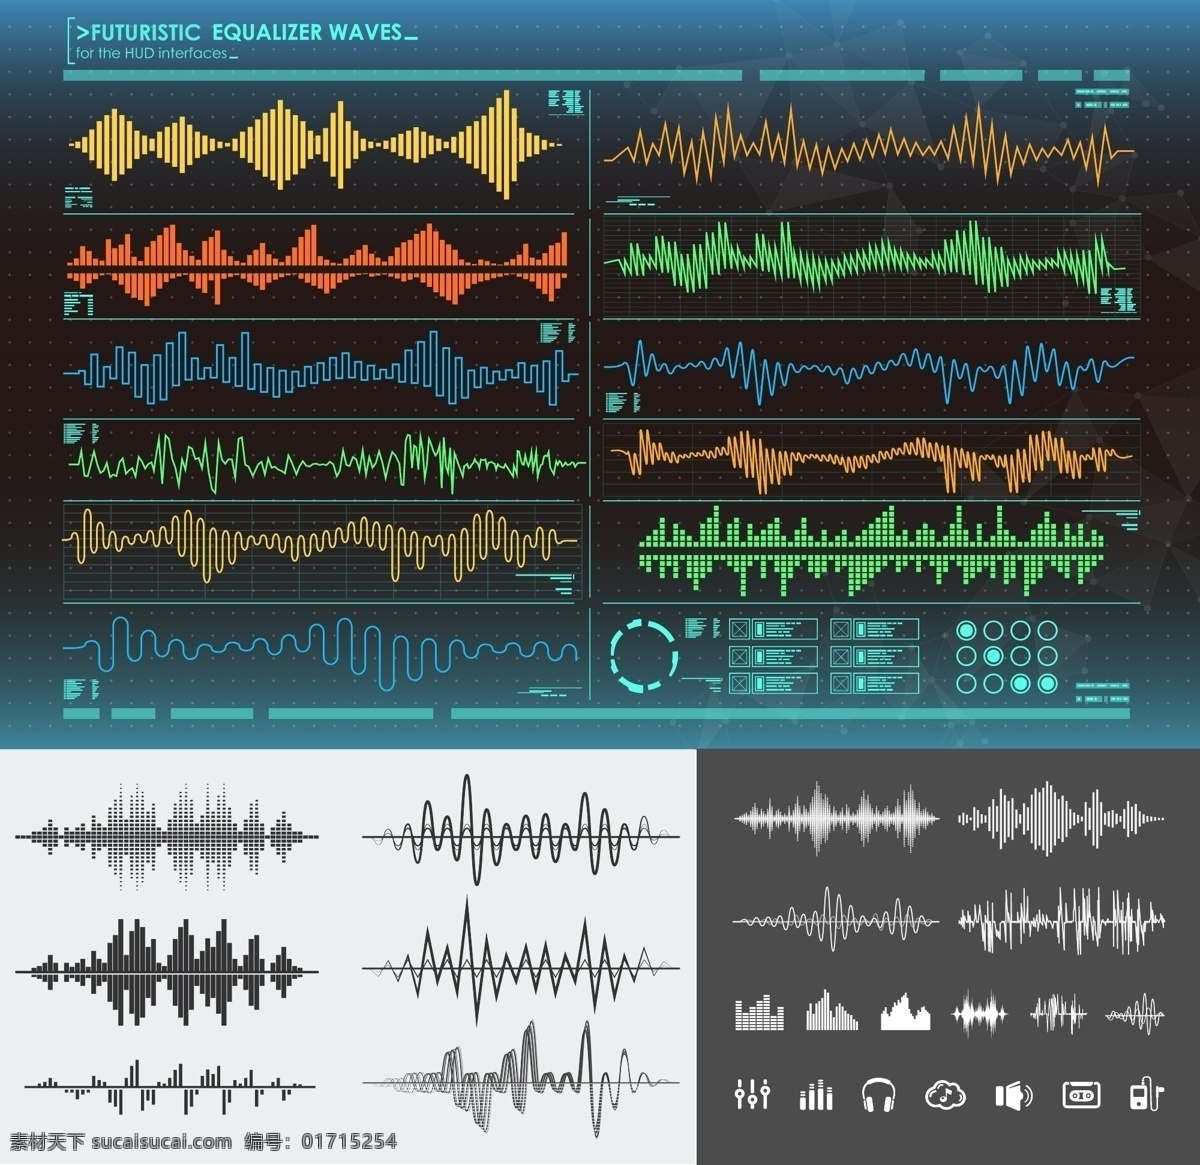 音乐声波图片 音乐声波 声波线条 立体声 音频波振荡 均衡器 曲线音量 音量显示背景